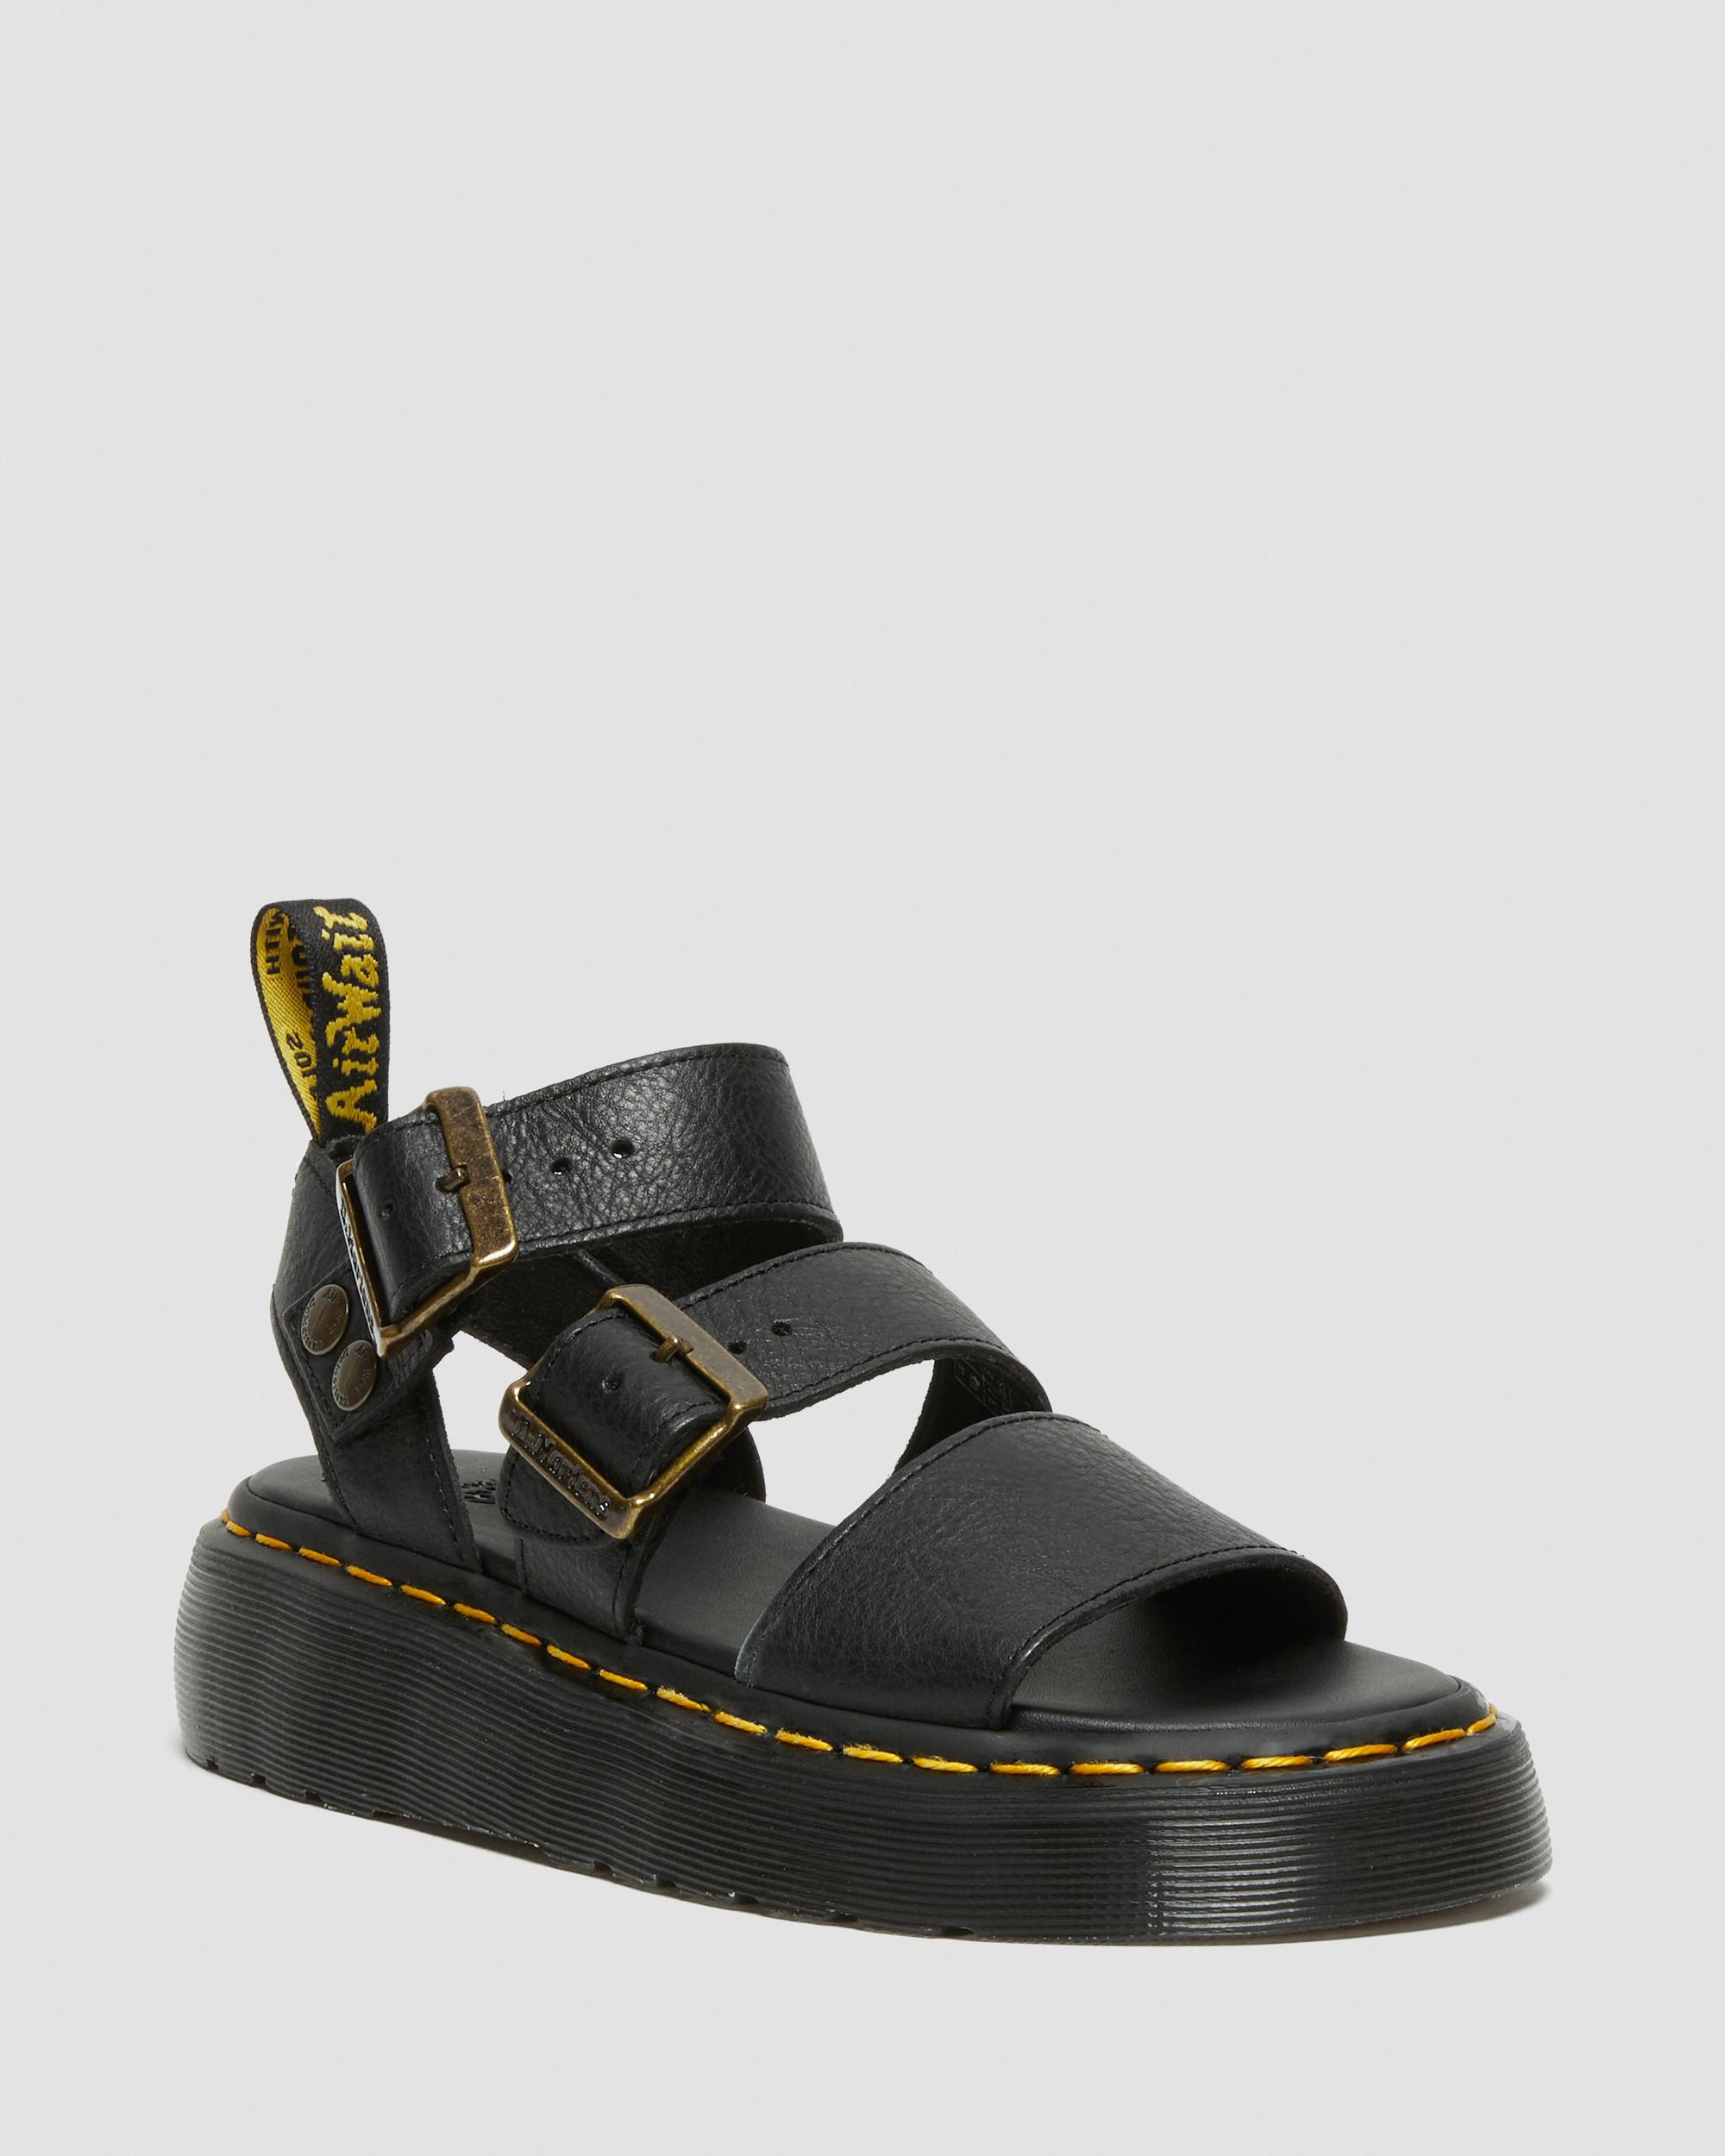 Gryphon Quad Leather Platform Sandals in Black